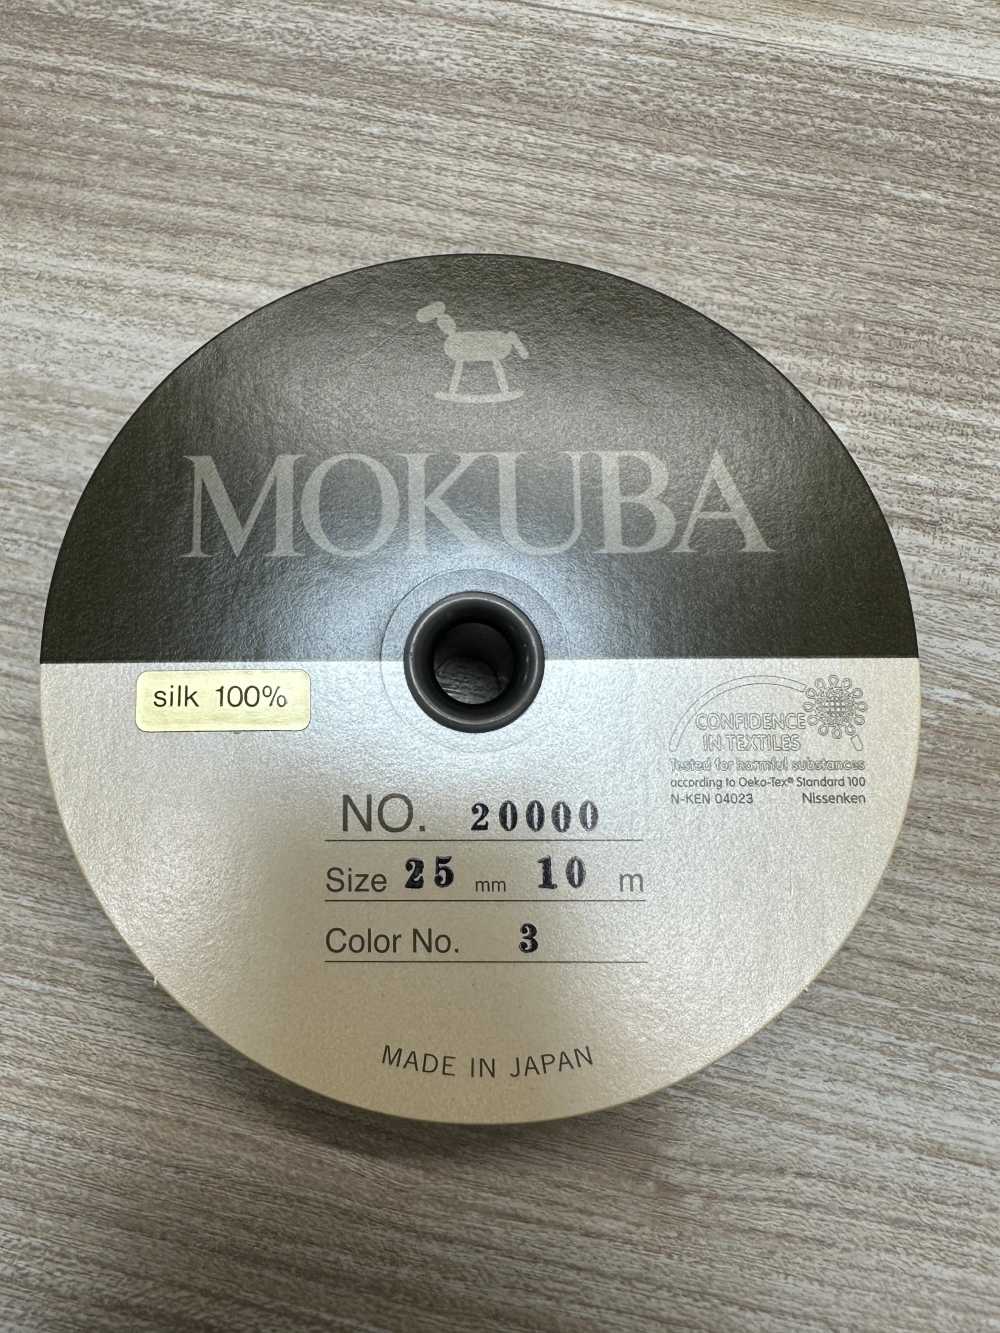 20000 MOKUBA シルク グログラン テープ【アウトレット】[リボン